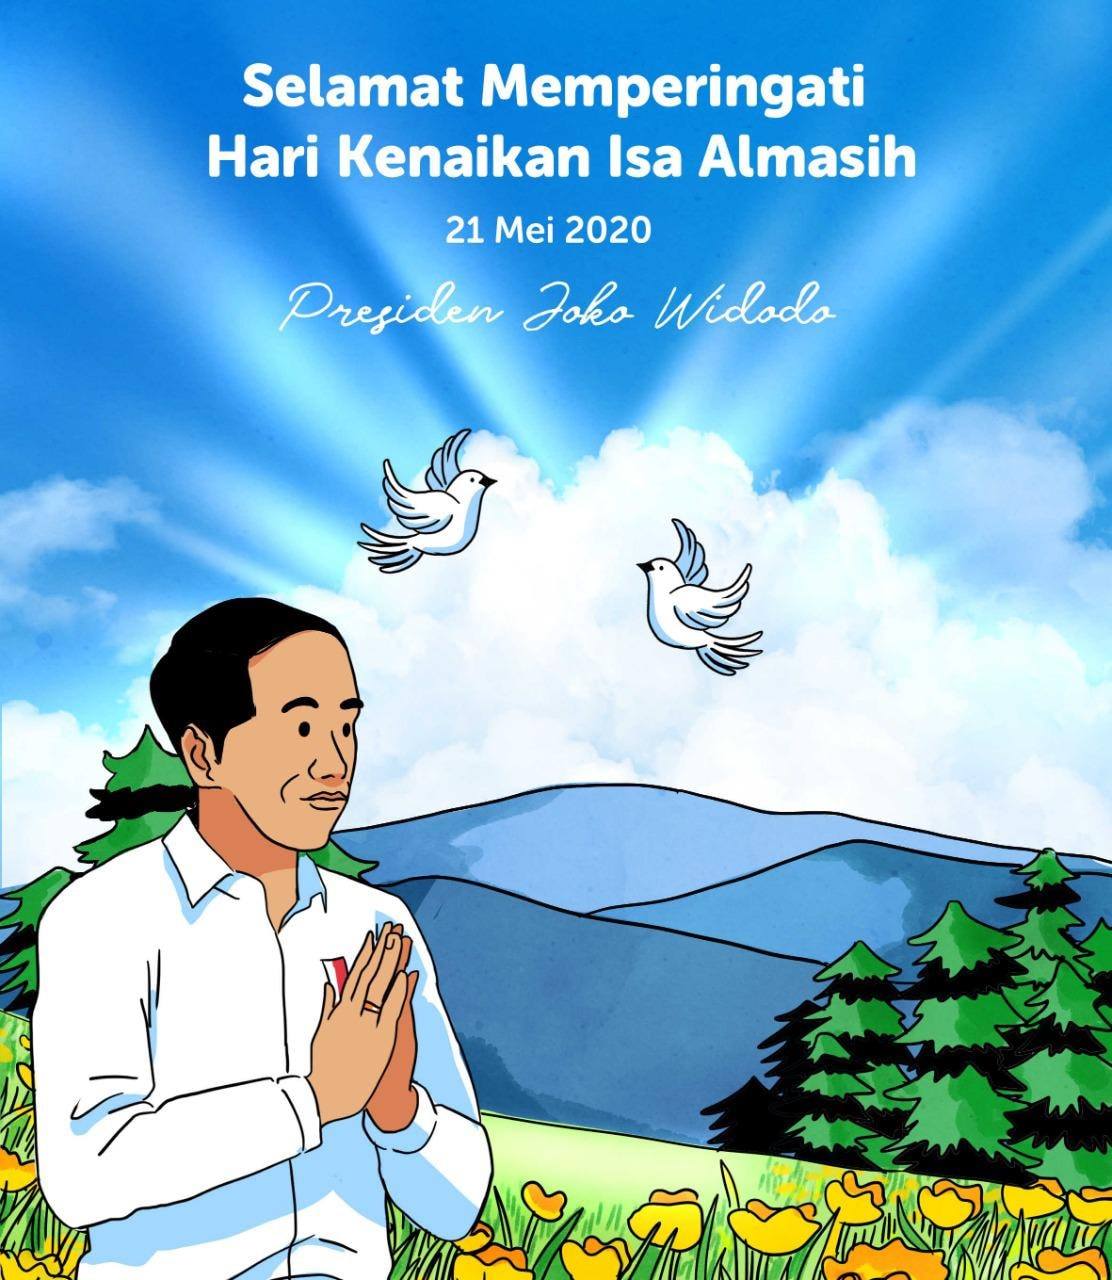 Jokowi: Selamat Memperingati Hari Kenaikan Isa Almasih | Tagar